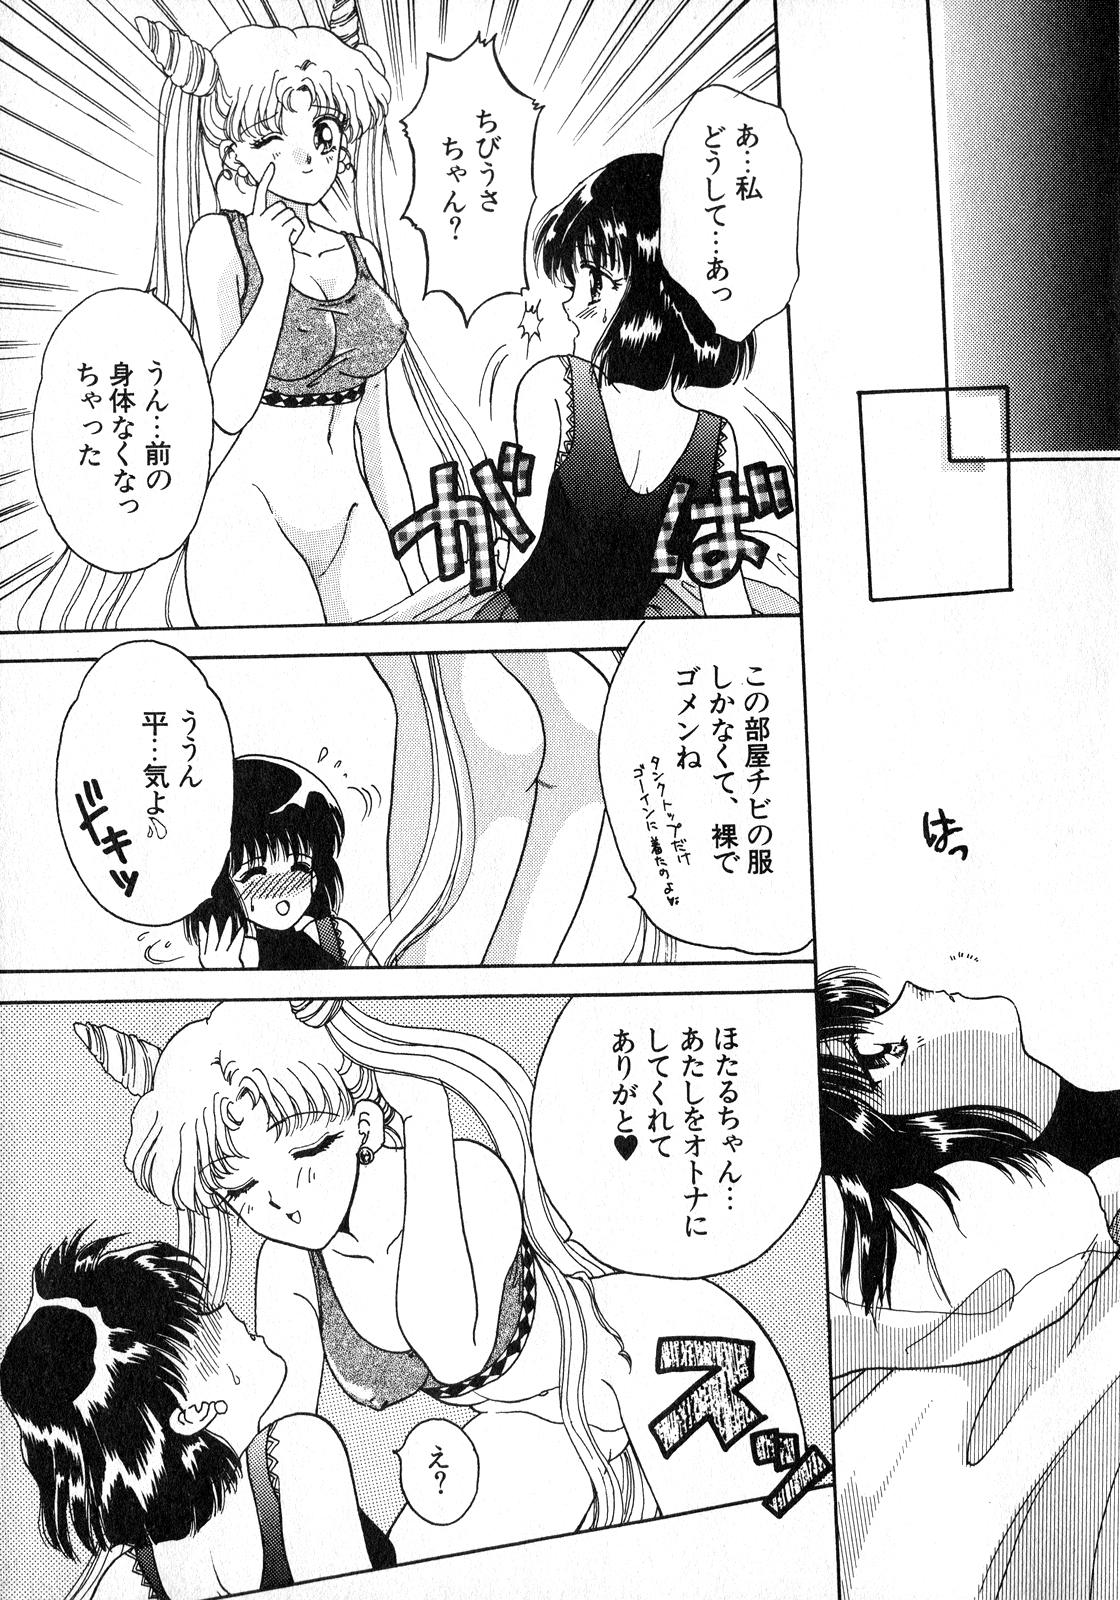 Lez Fuck Lunatic Party 8 - Sailor moon Hardcore Rough Sex - Page 12